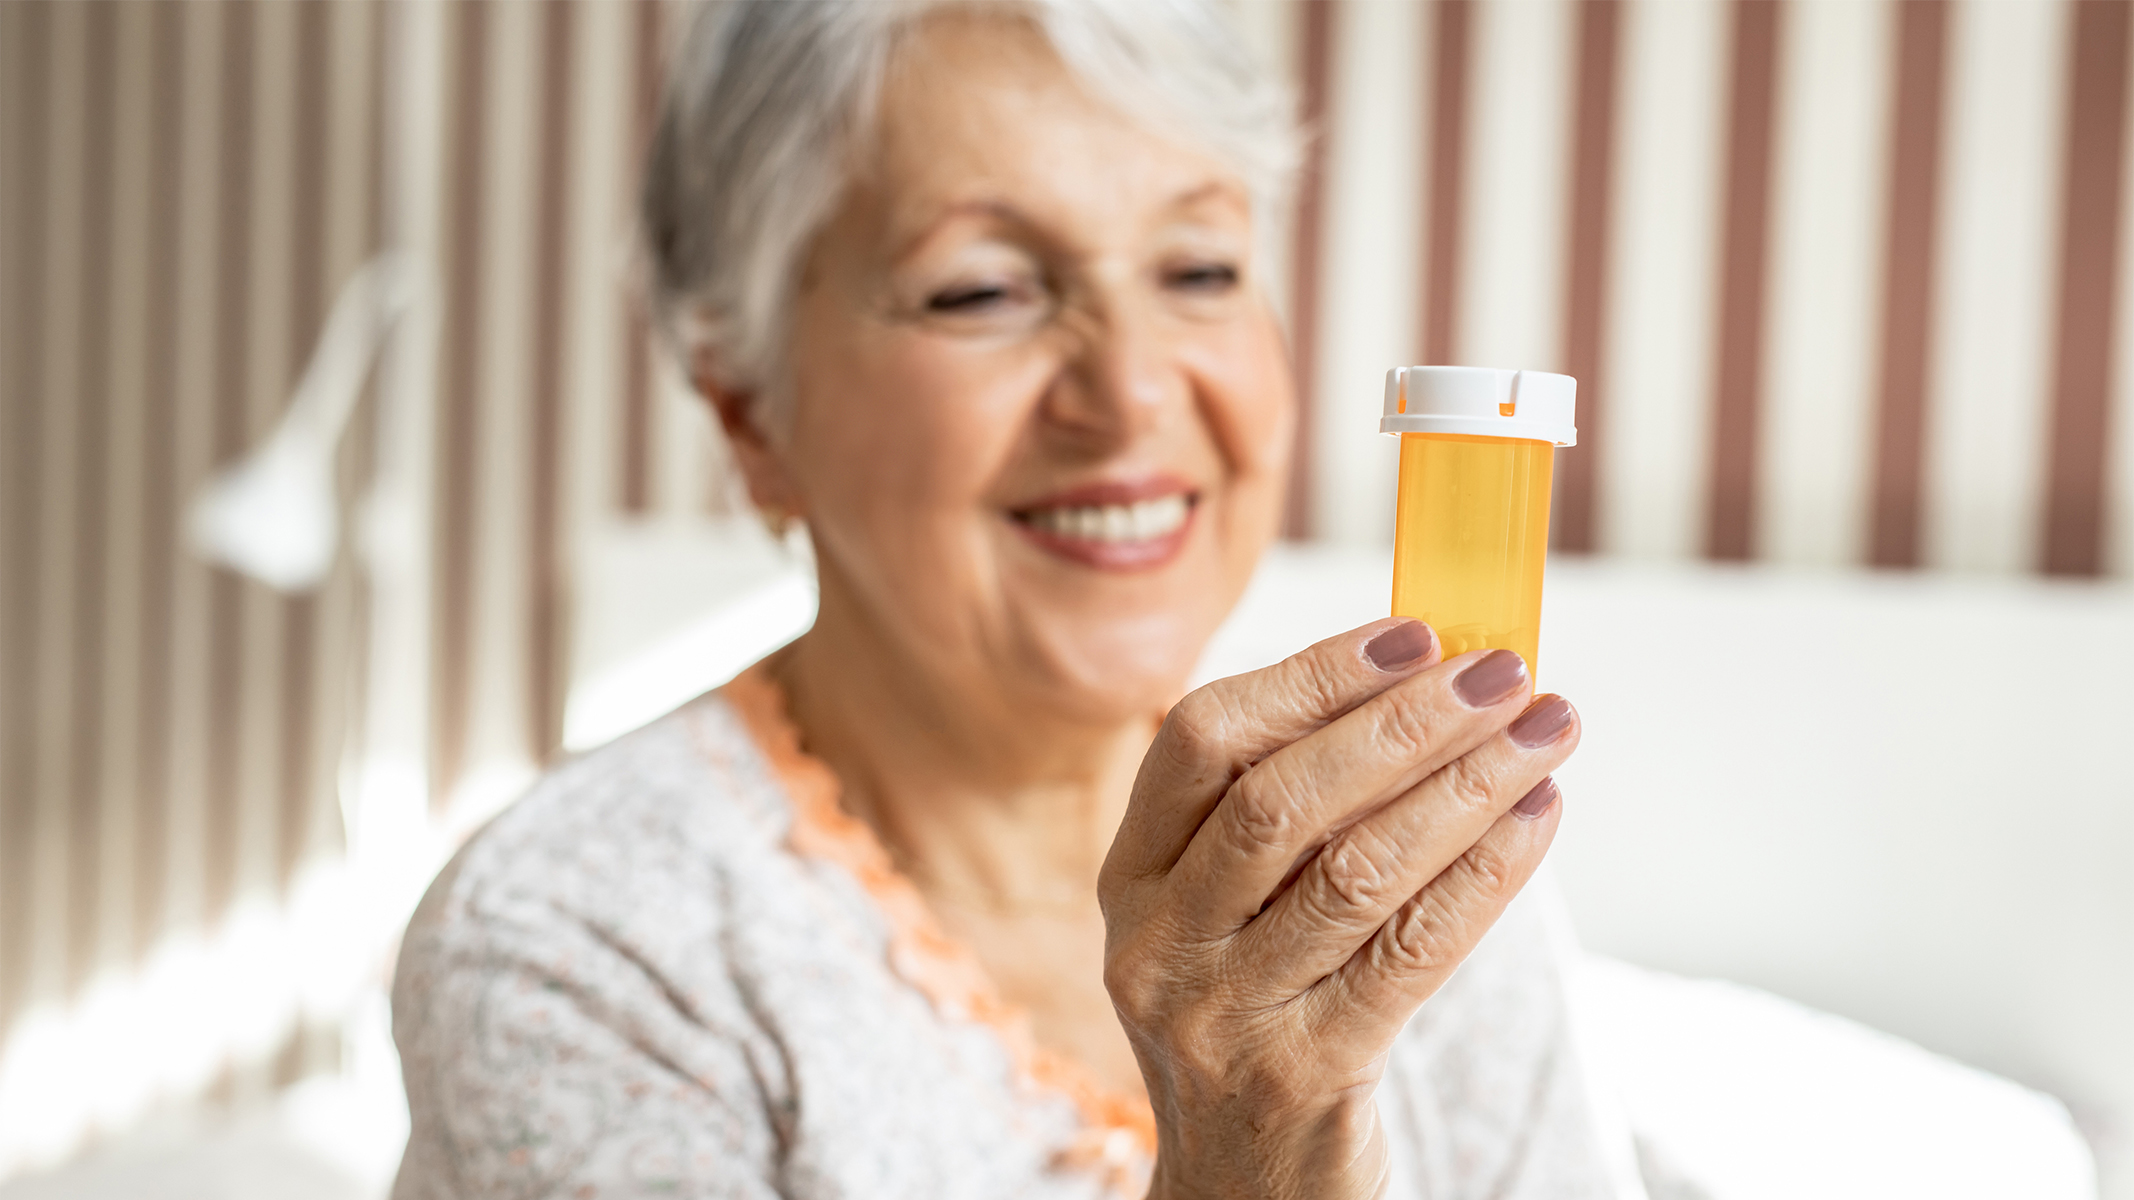  Senior woman holding a prescription bottle.